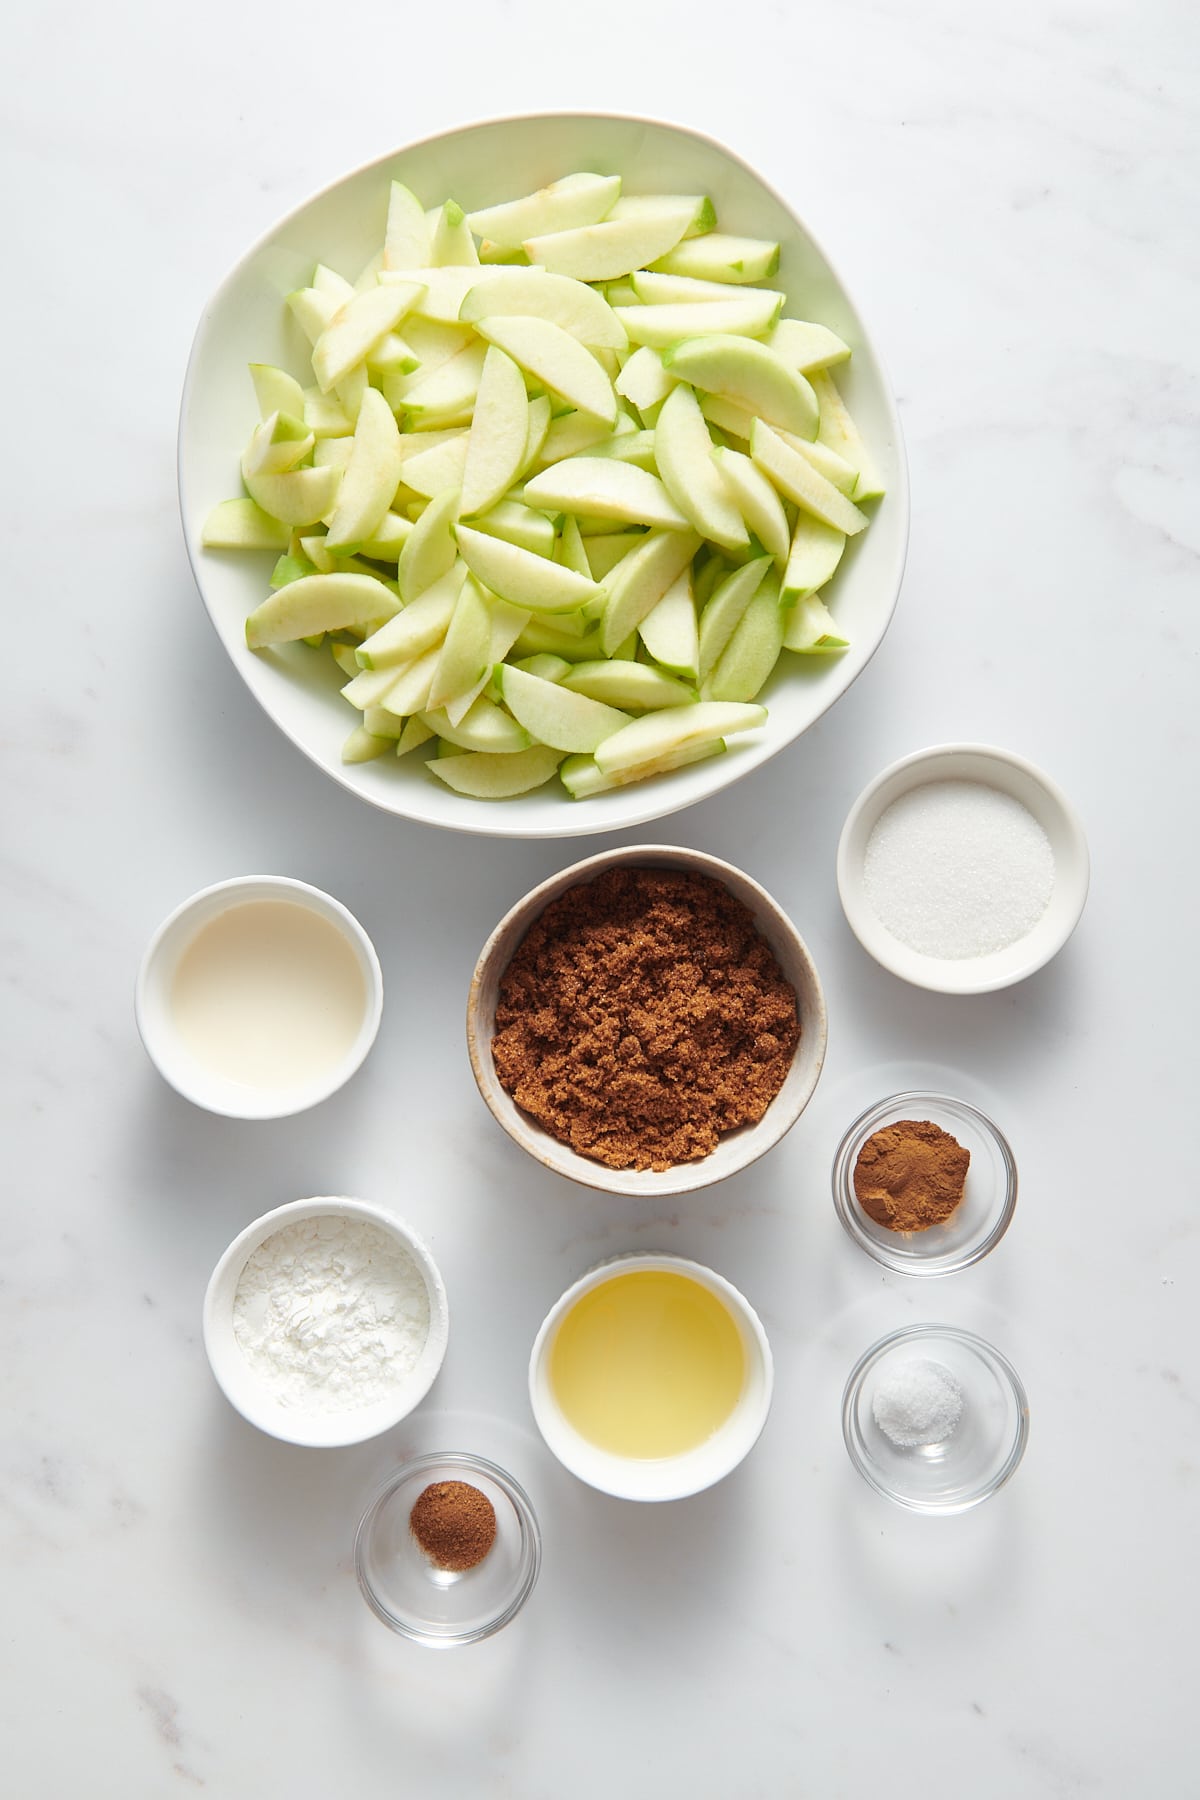 ingredients to make apple slab pie.